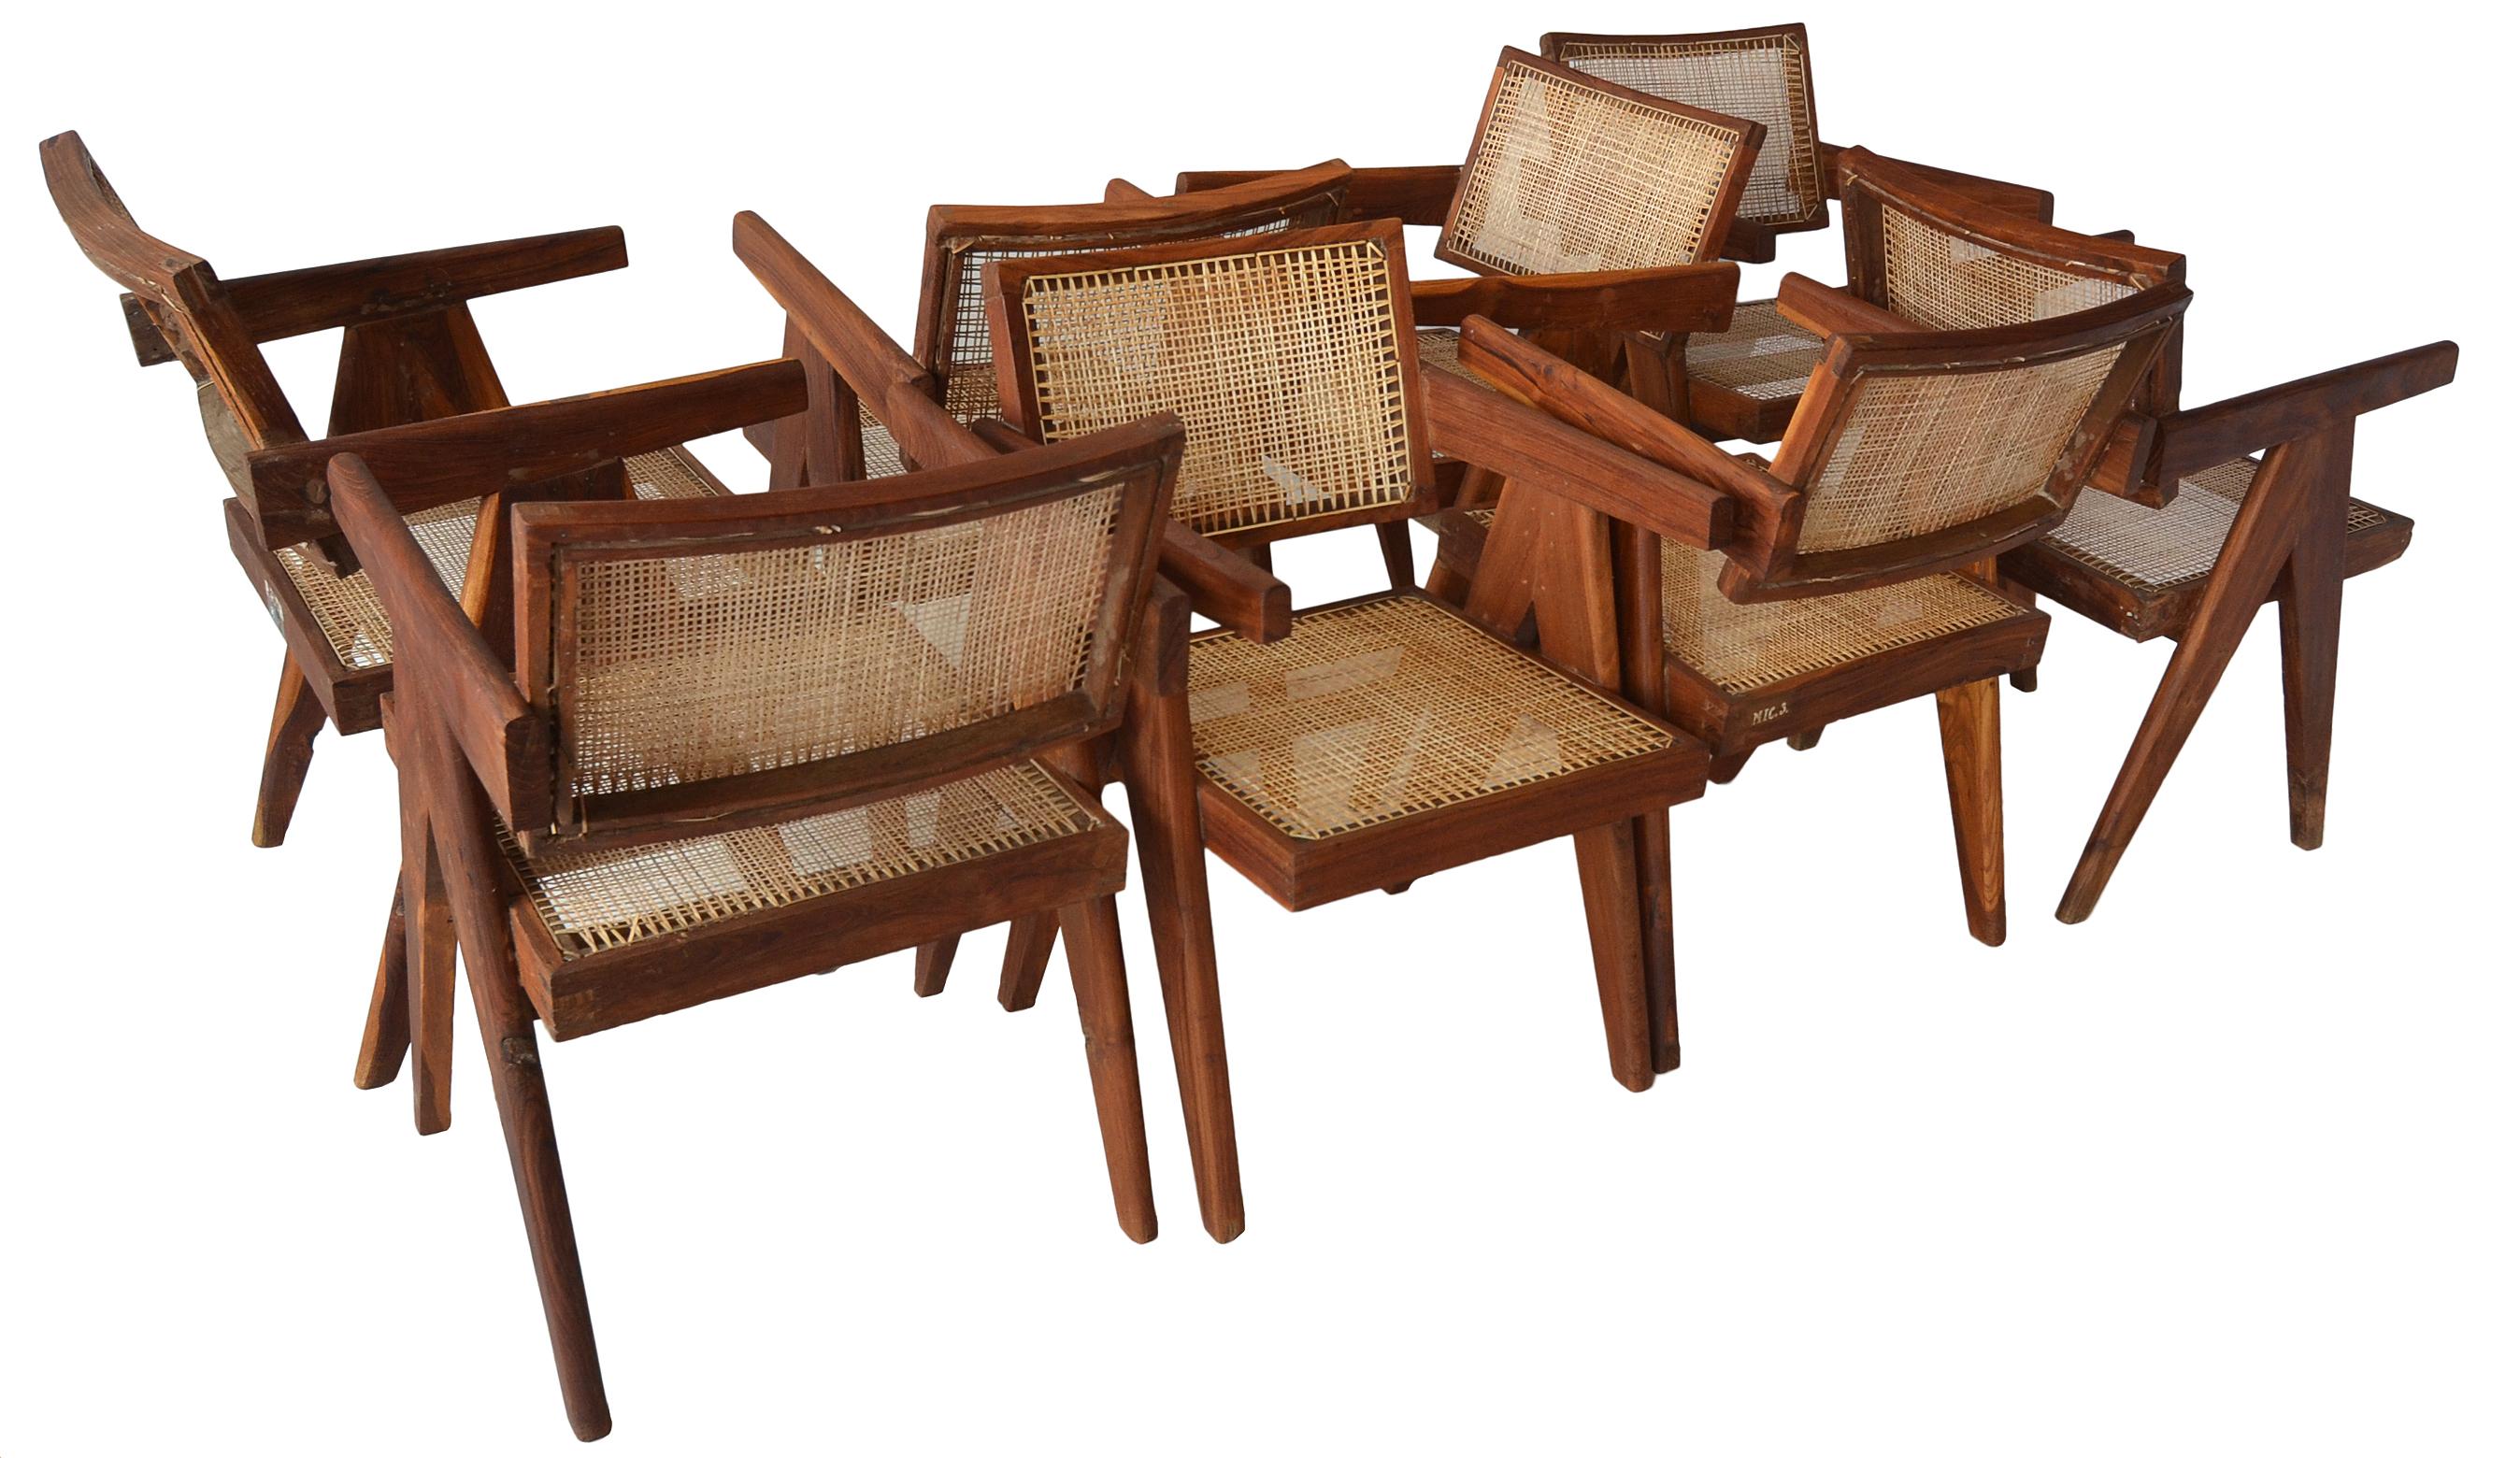 Ein großartiges Set von 8 Sesseln mit schwimmender Rückenlehne von Pierre Jeanneret für das Chandigarh-Projekt.

Diese Exemplare sind sehr begehrt, da sie aus indischem Rosenholz oder Sissoo-Holz gefertigt sind. 

Viele Stühle weisen noch Reste